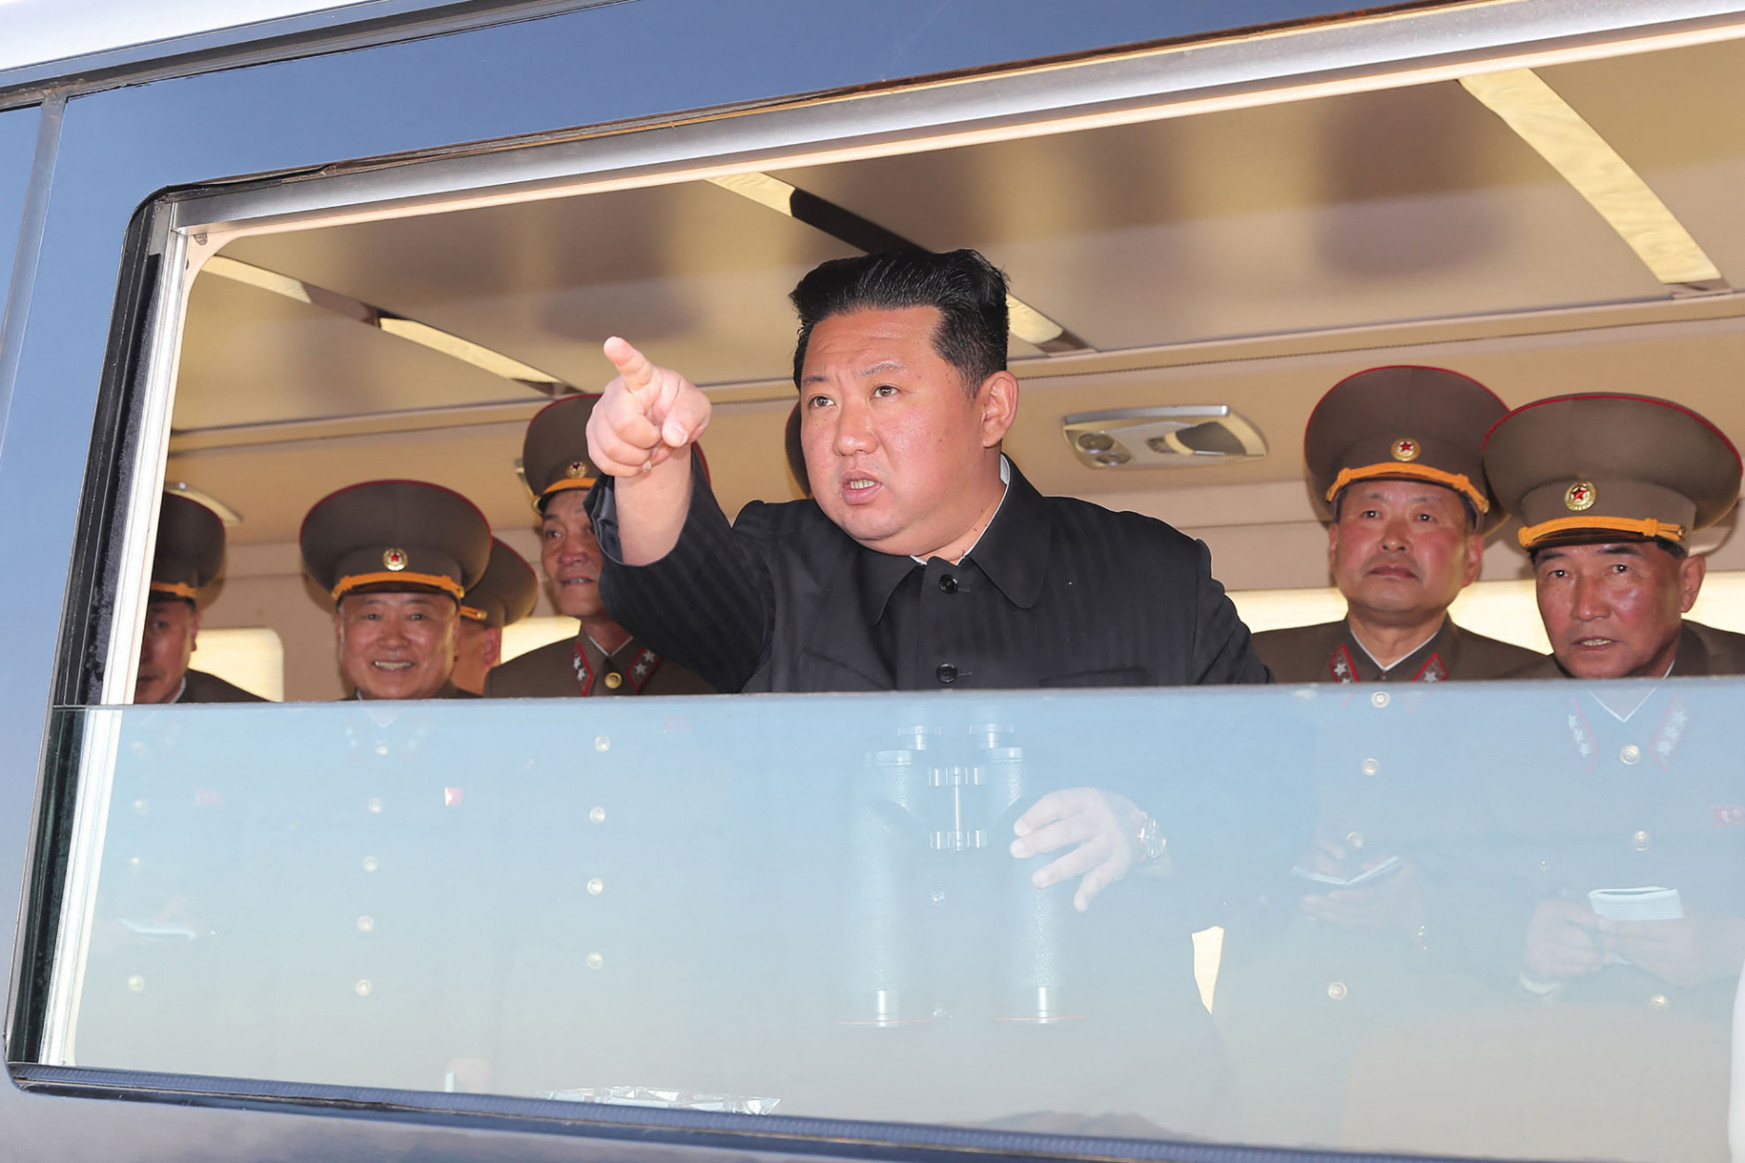 Az oroszok árnyékában Kim Dzsongun is újra elkezdett rakétázni, de mit akar ezzel?